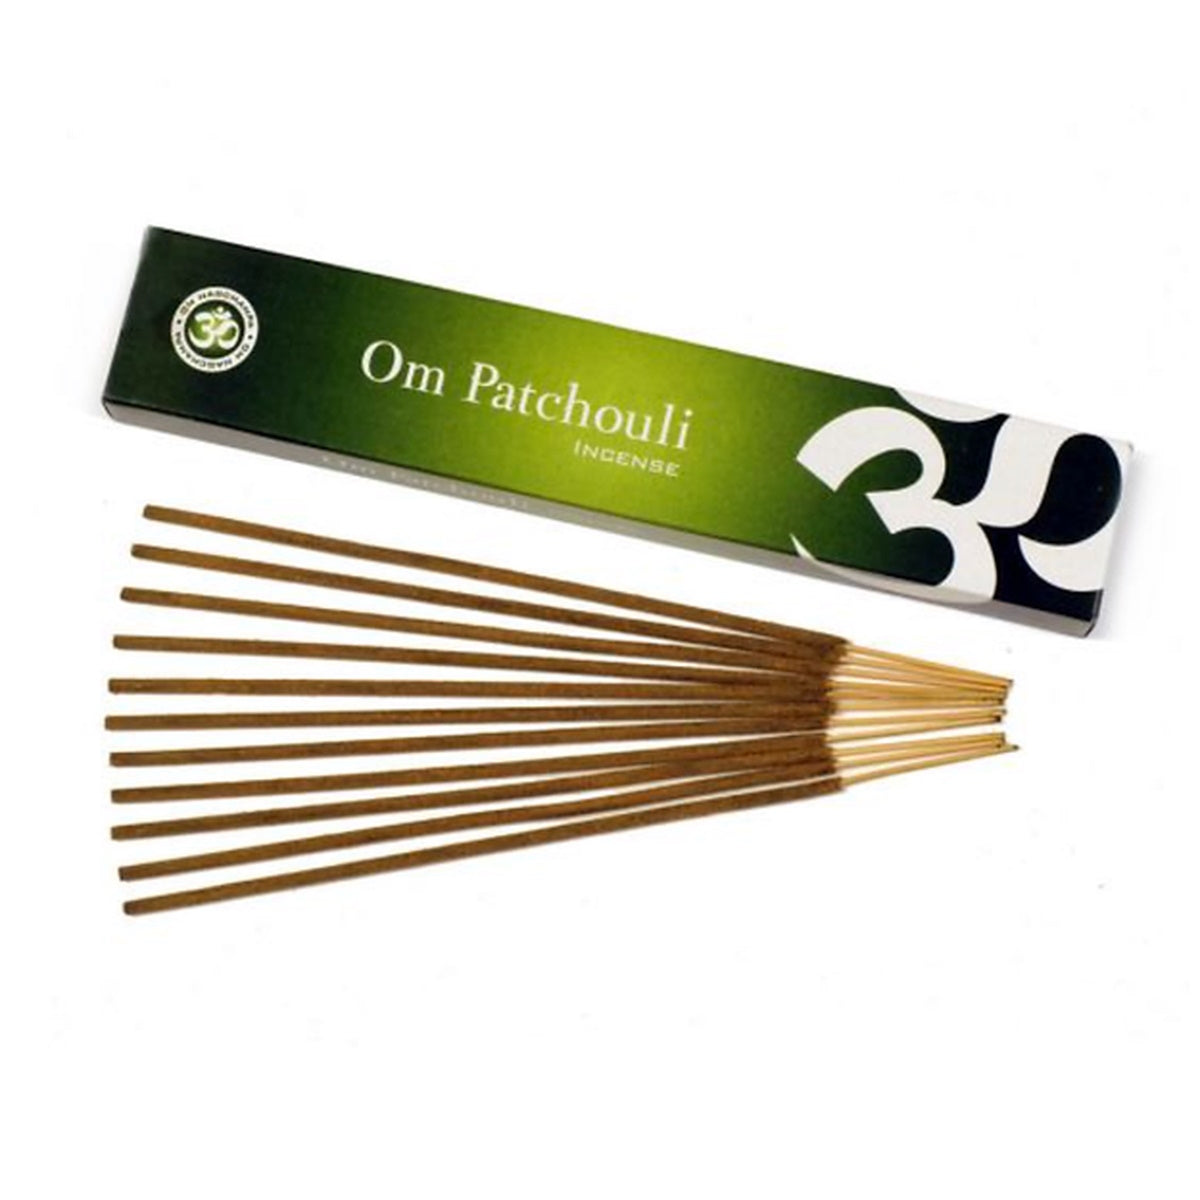 Om Patchouli Incense Sticks